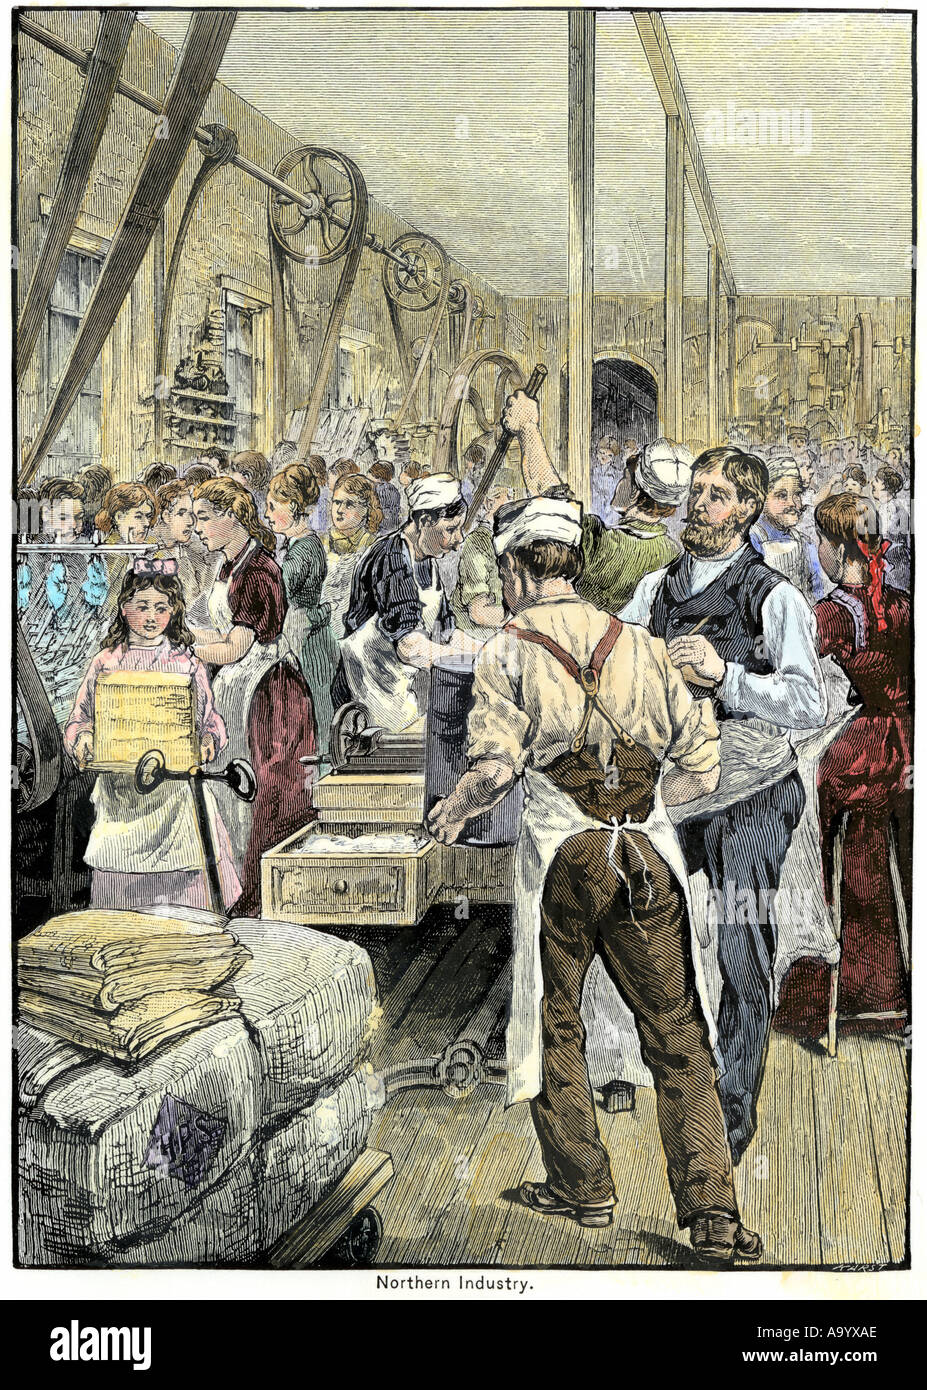 Les travailleurs du textile dans une usine du nord aux États-Unis des années 1800. À la main, gravure sur bois Banque D'Images